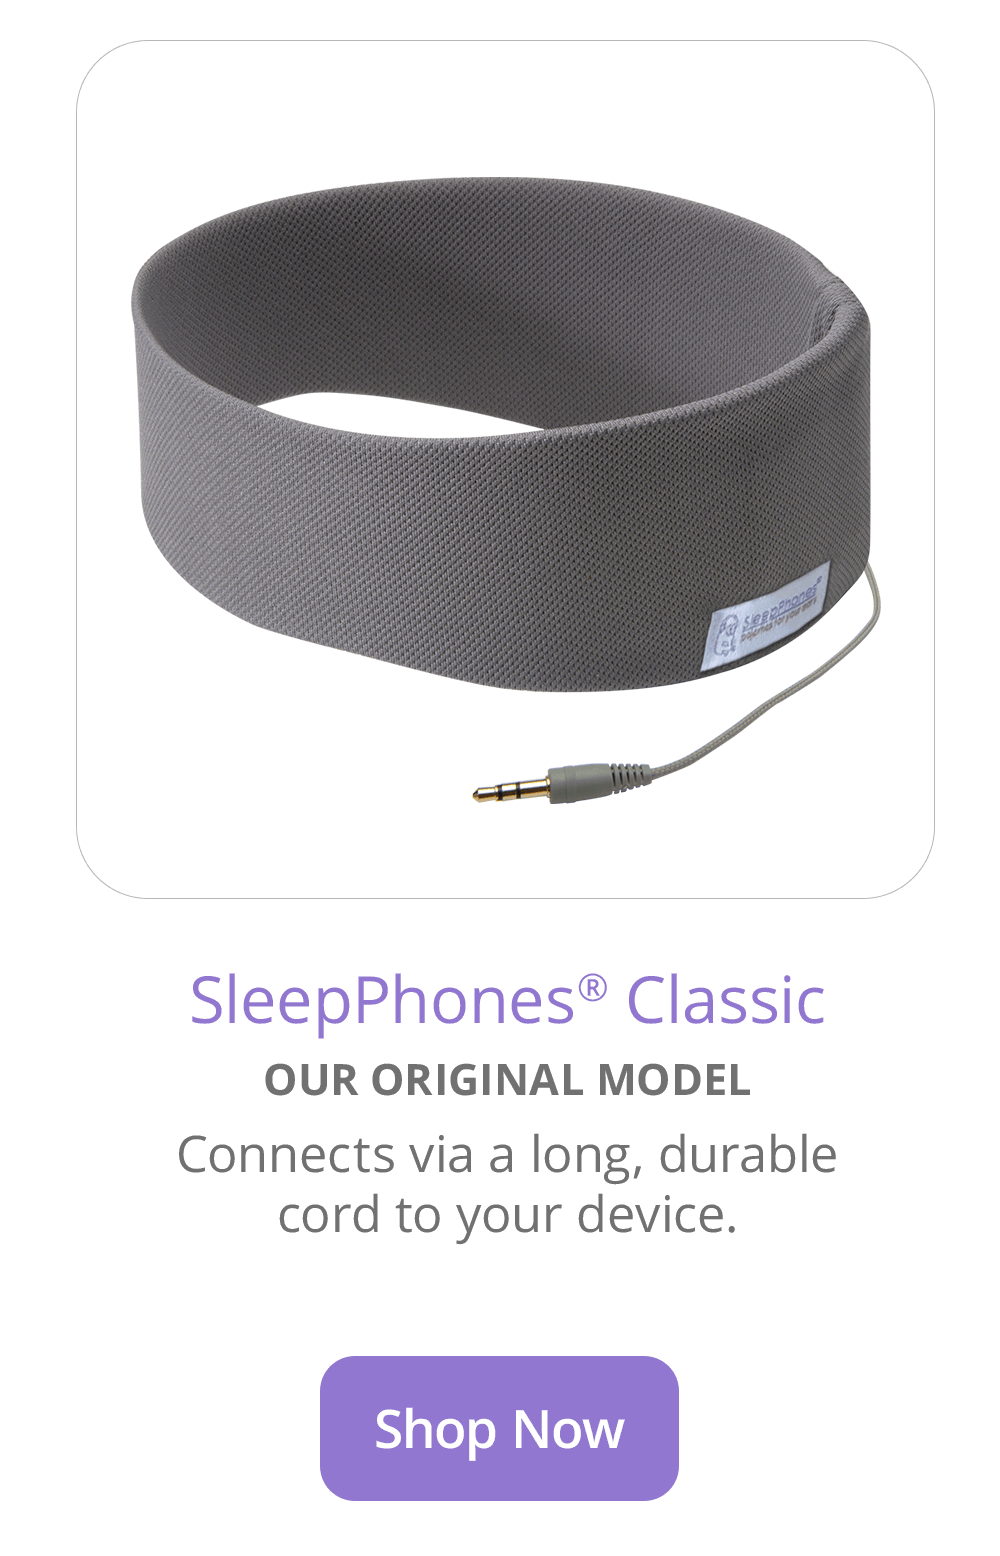 SleepPhones Classic Wired Sleep Headphones in Gray Breeze